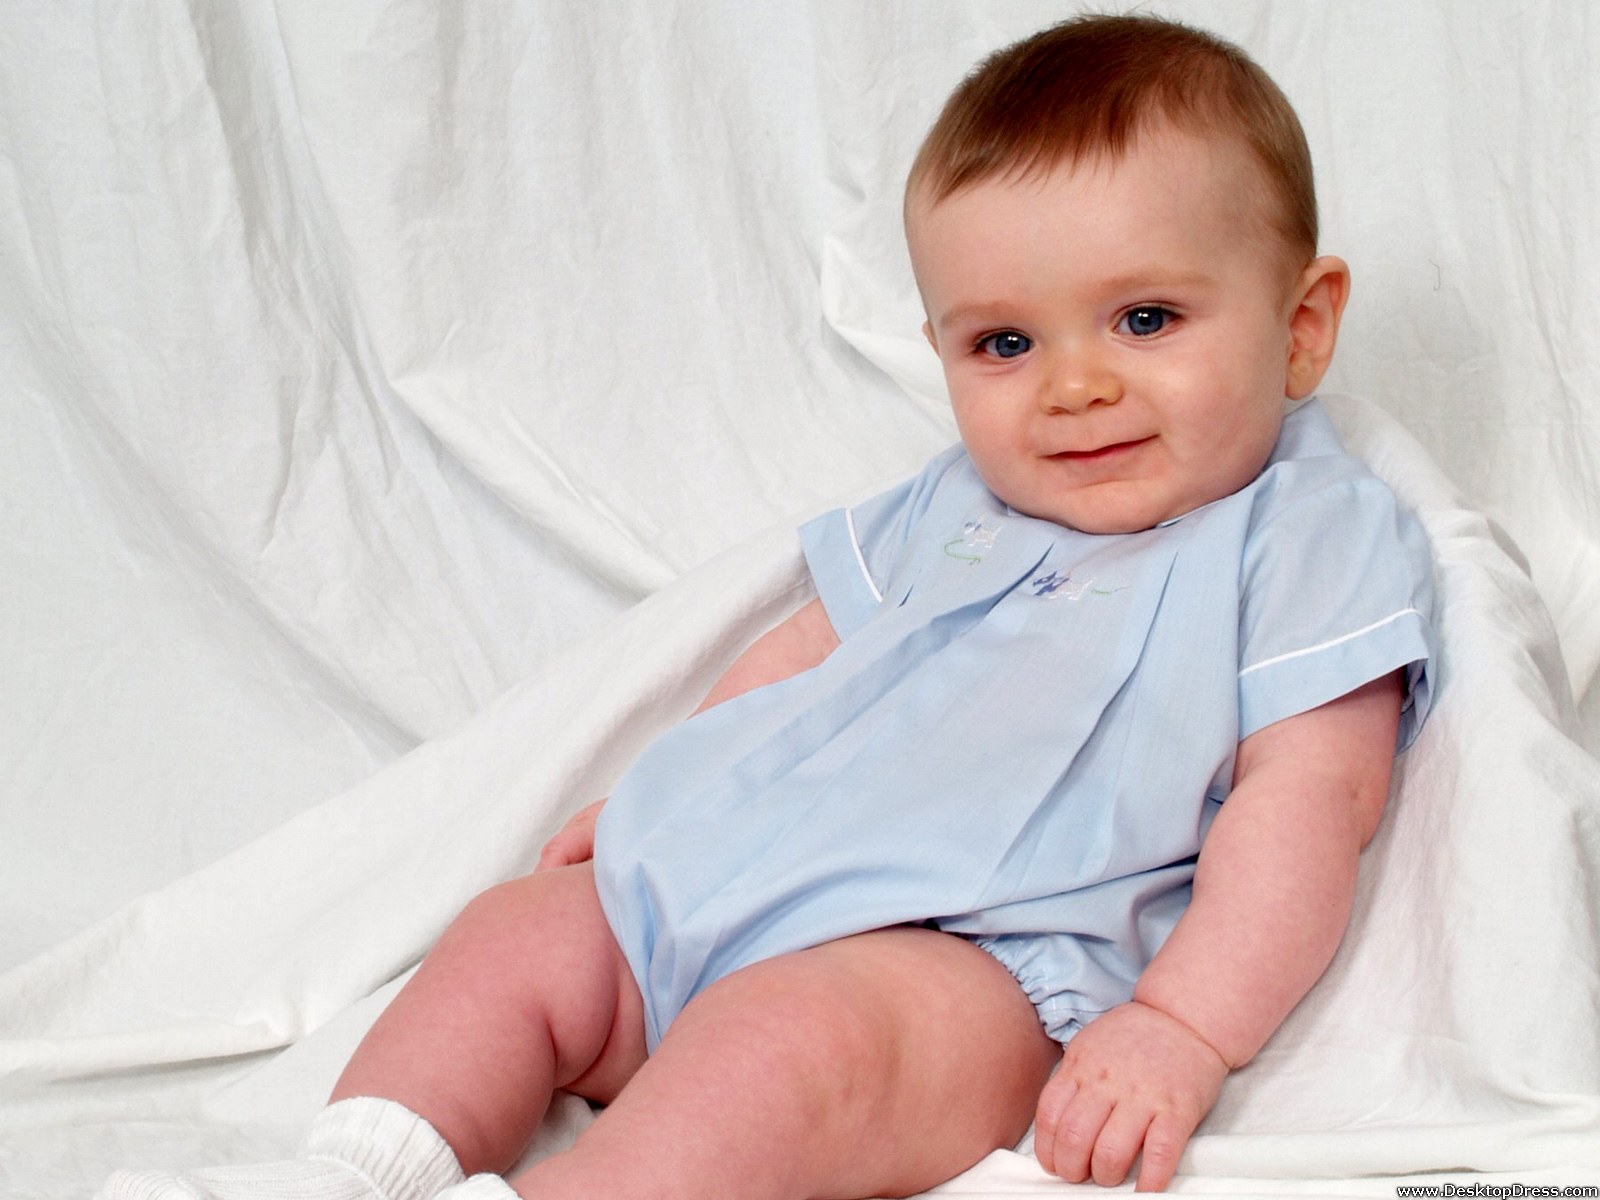 Loveable Baby Boy - Cute Baby Wallpapers Hd In Boys - 1600x1200 Wallpaper -  